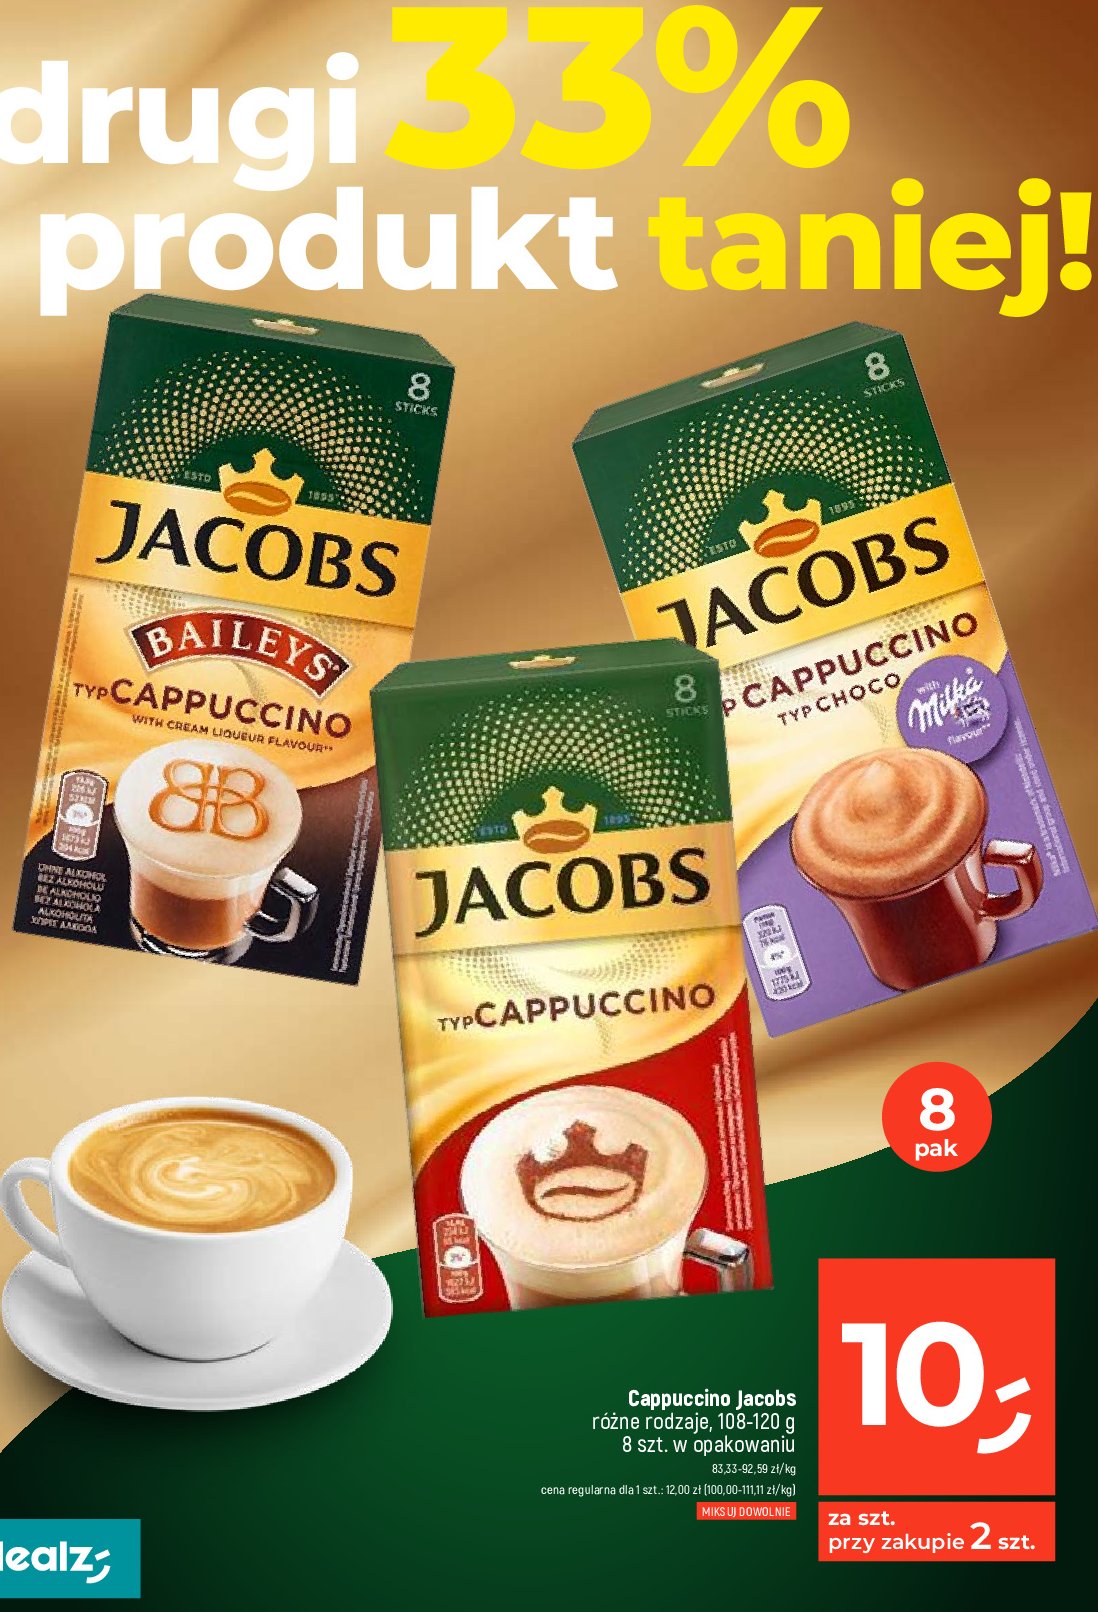 Cappuccino milka Jacobs cappuccino specials promocja